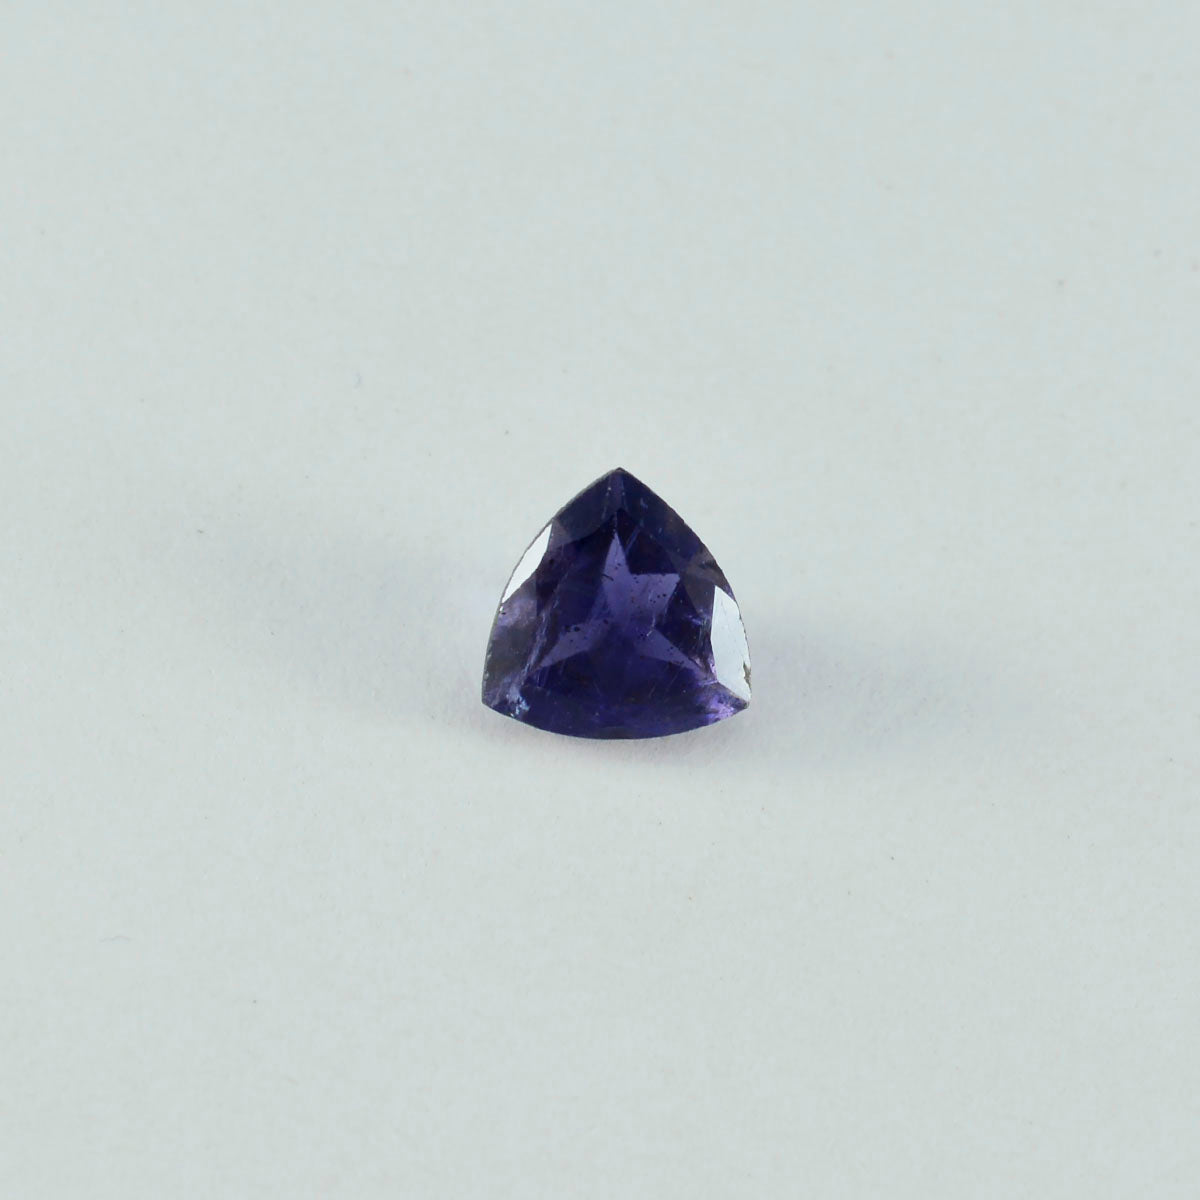 Riyogems 1 pièce d'iolite bleue à facettes 15x15mm en forme de trillion, pierre précieuse en vrac de qualité douce